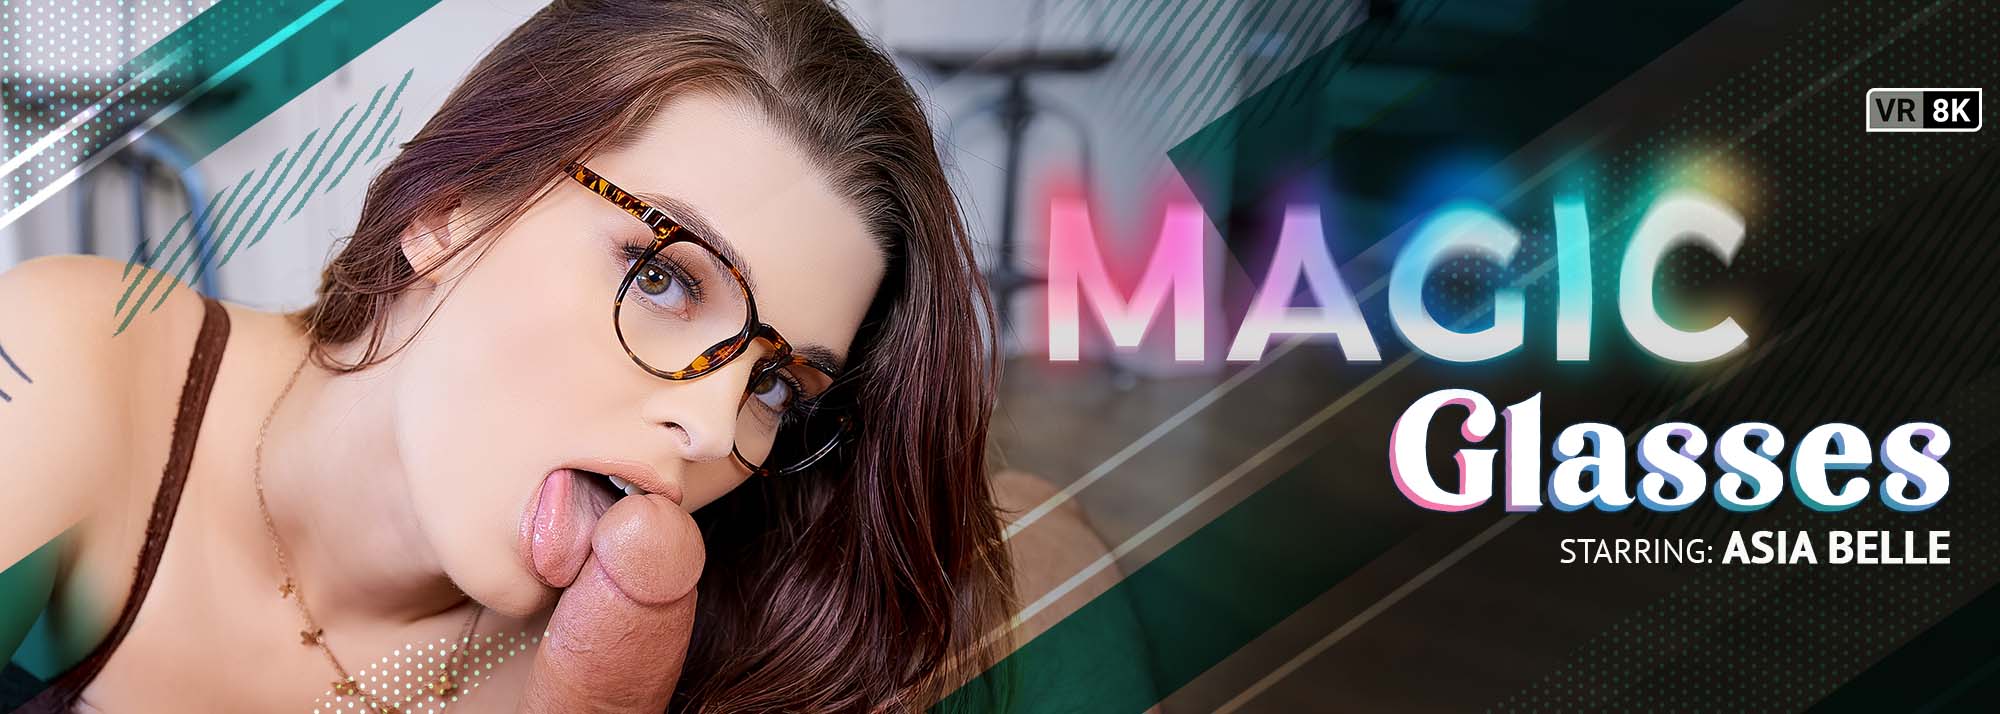 Magic Glasses - VR Porn Video, Starring: Asia Belle VR